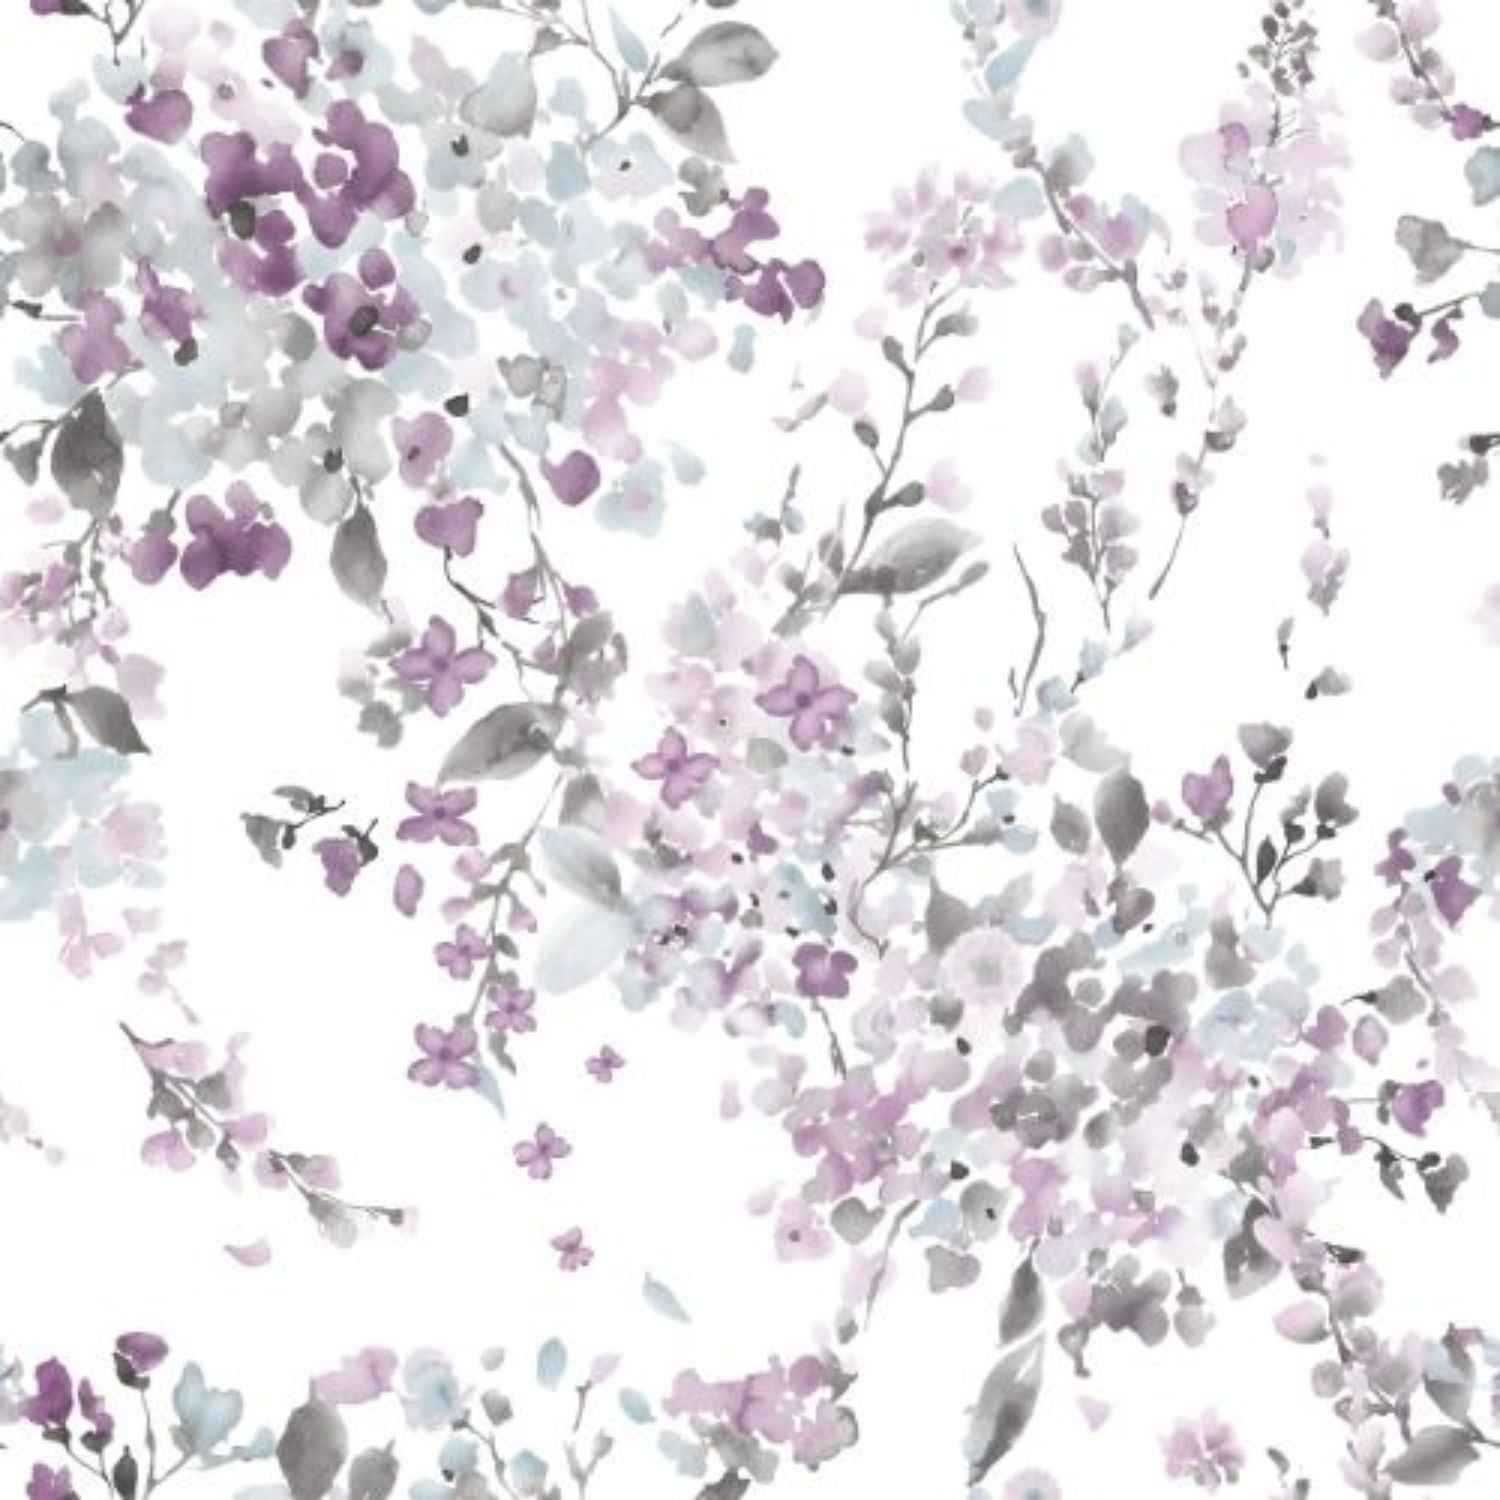 completo-lenzuola-acquerello-puro-cotone-bouquet-fiorellini-lilla-rosa-bianco-quadrifoglio-pattern.jpg